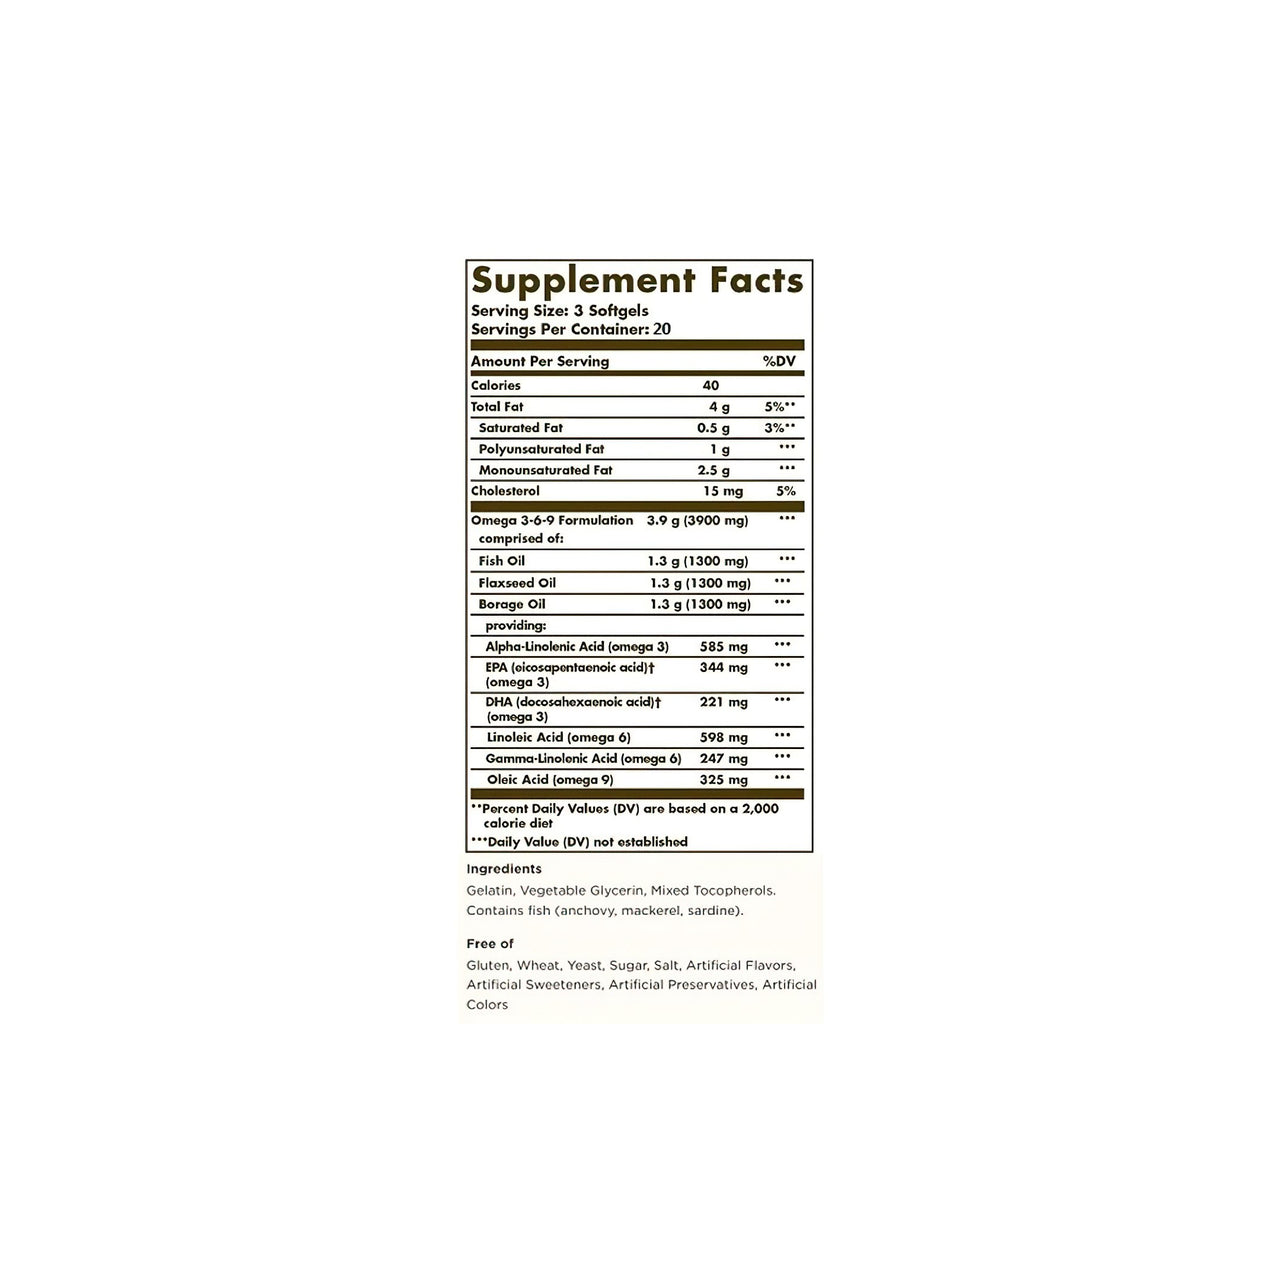 Etiqueta de suplemento nutricional Solgar con ácidos grasos esenciales y Omega 3-6-9 60 sgel sobre fondo blanco.